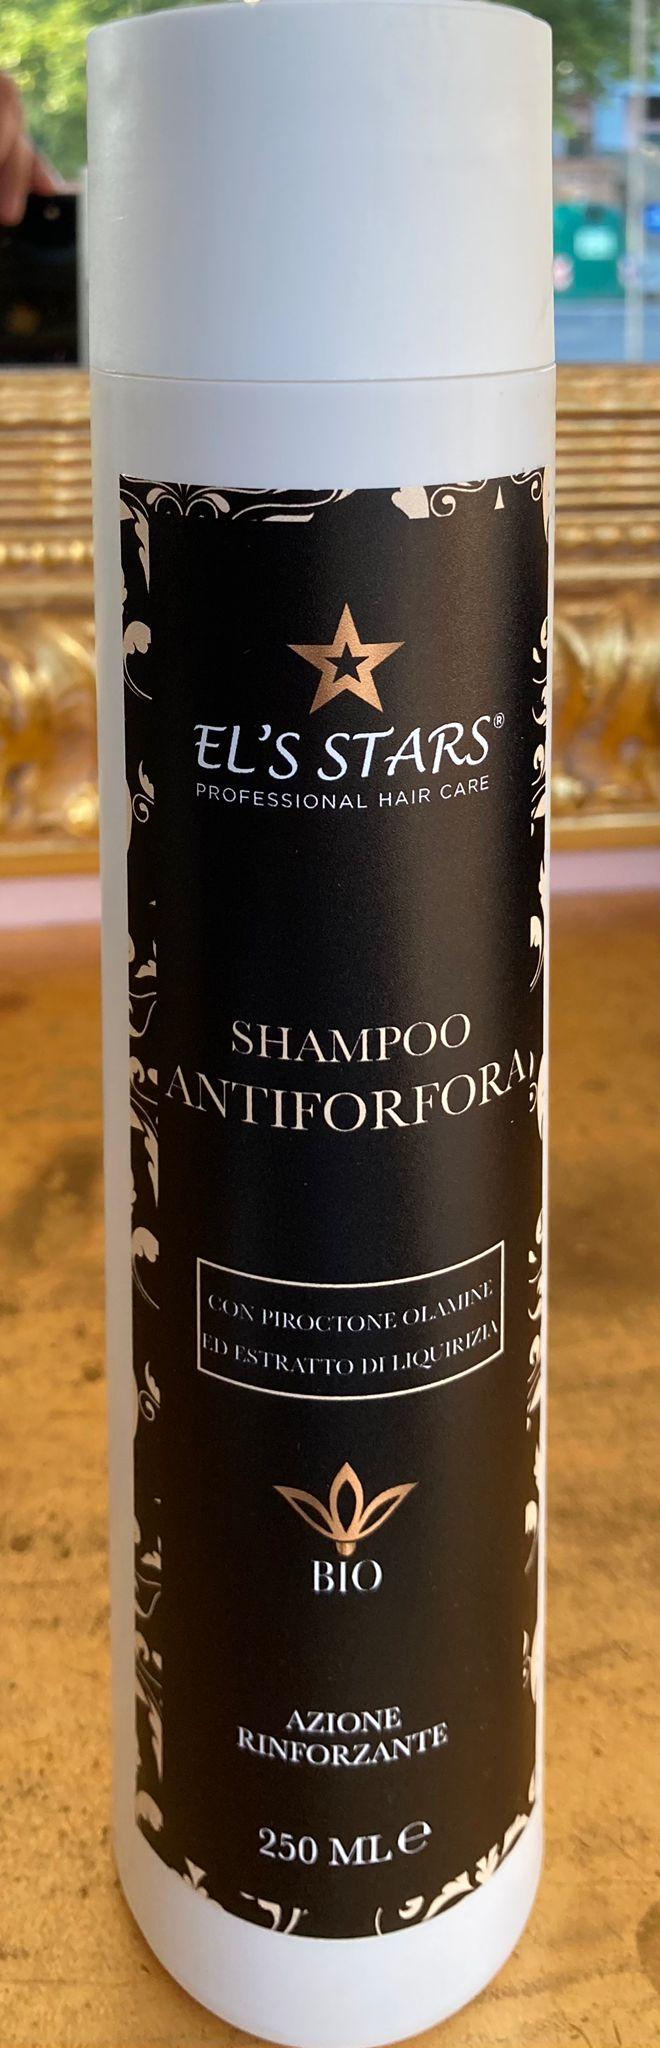 Linea Bio - Shampoo Antiforfora Rinforzante